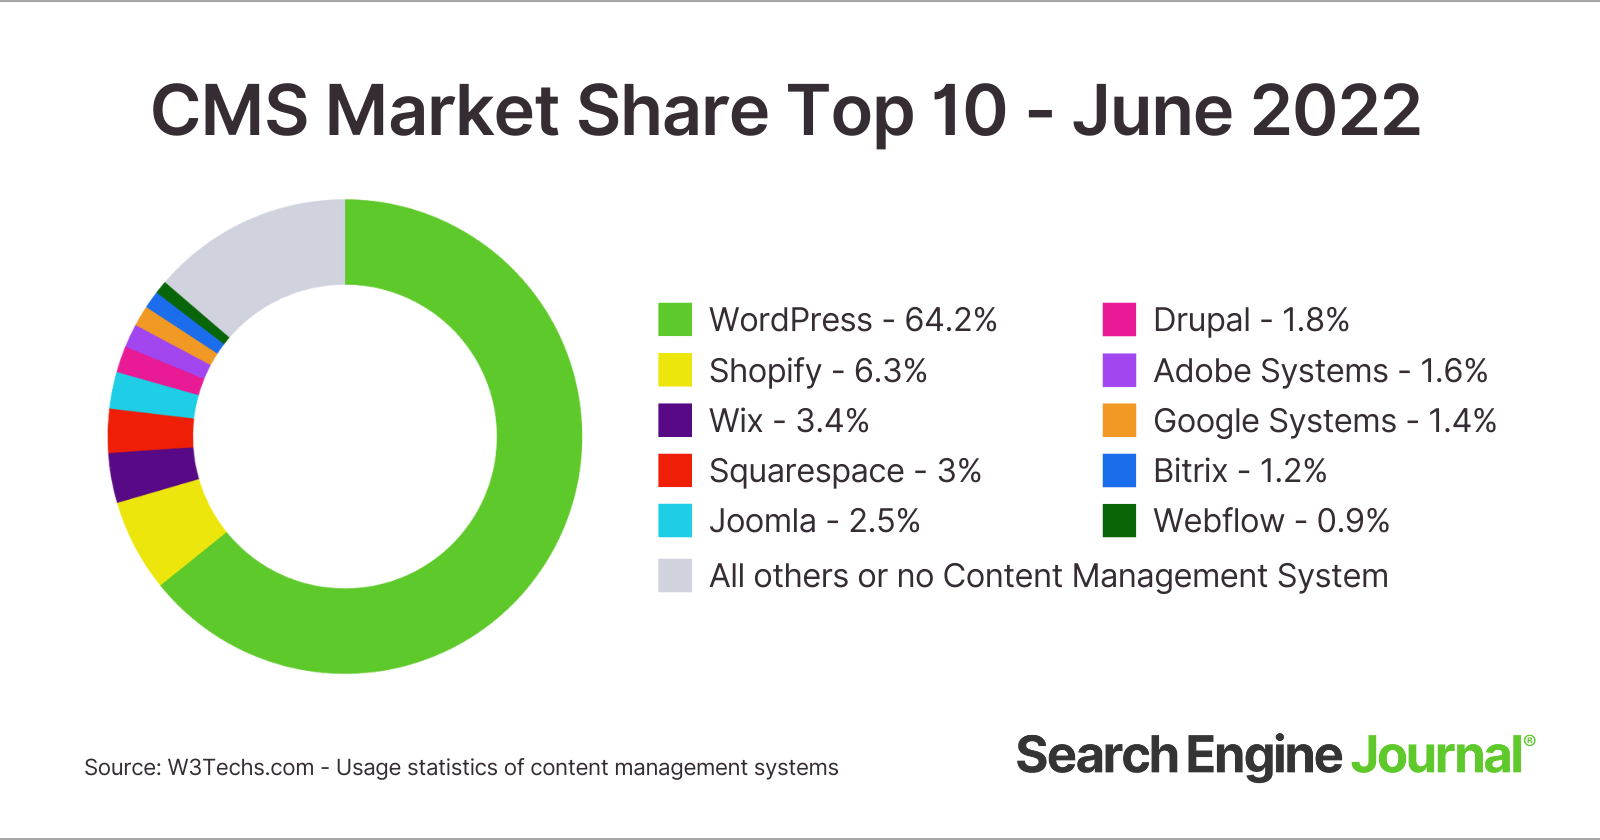 الحصة السوقية لأفضل 10 أنظمة لإدارة المحتوى اعتبارًا من يونيو 2022.